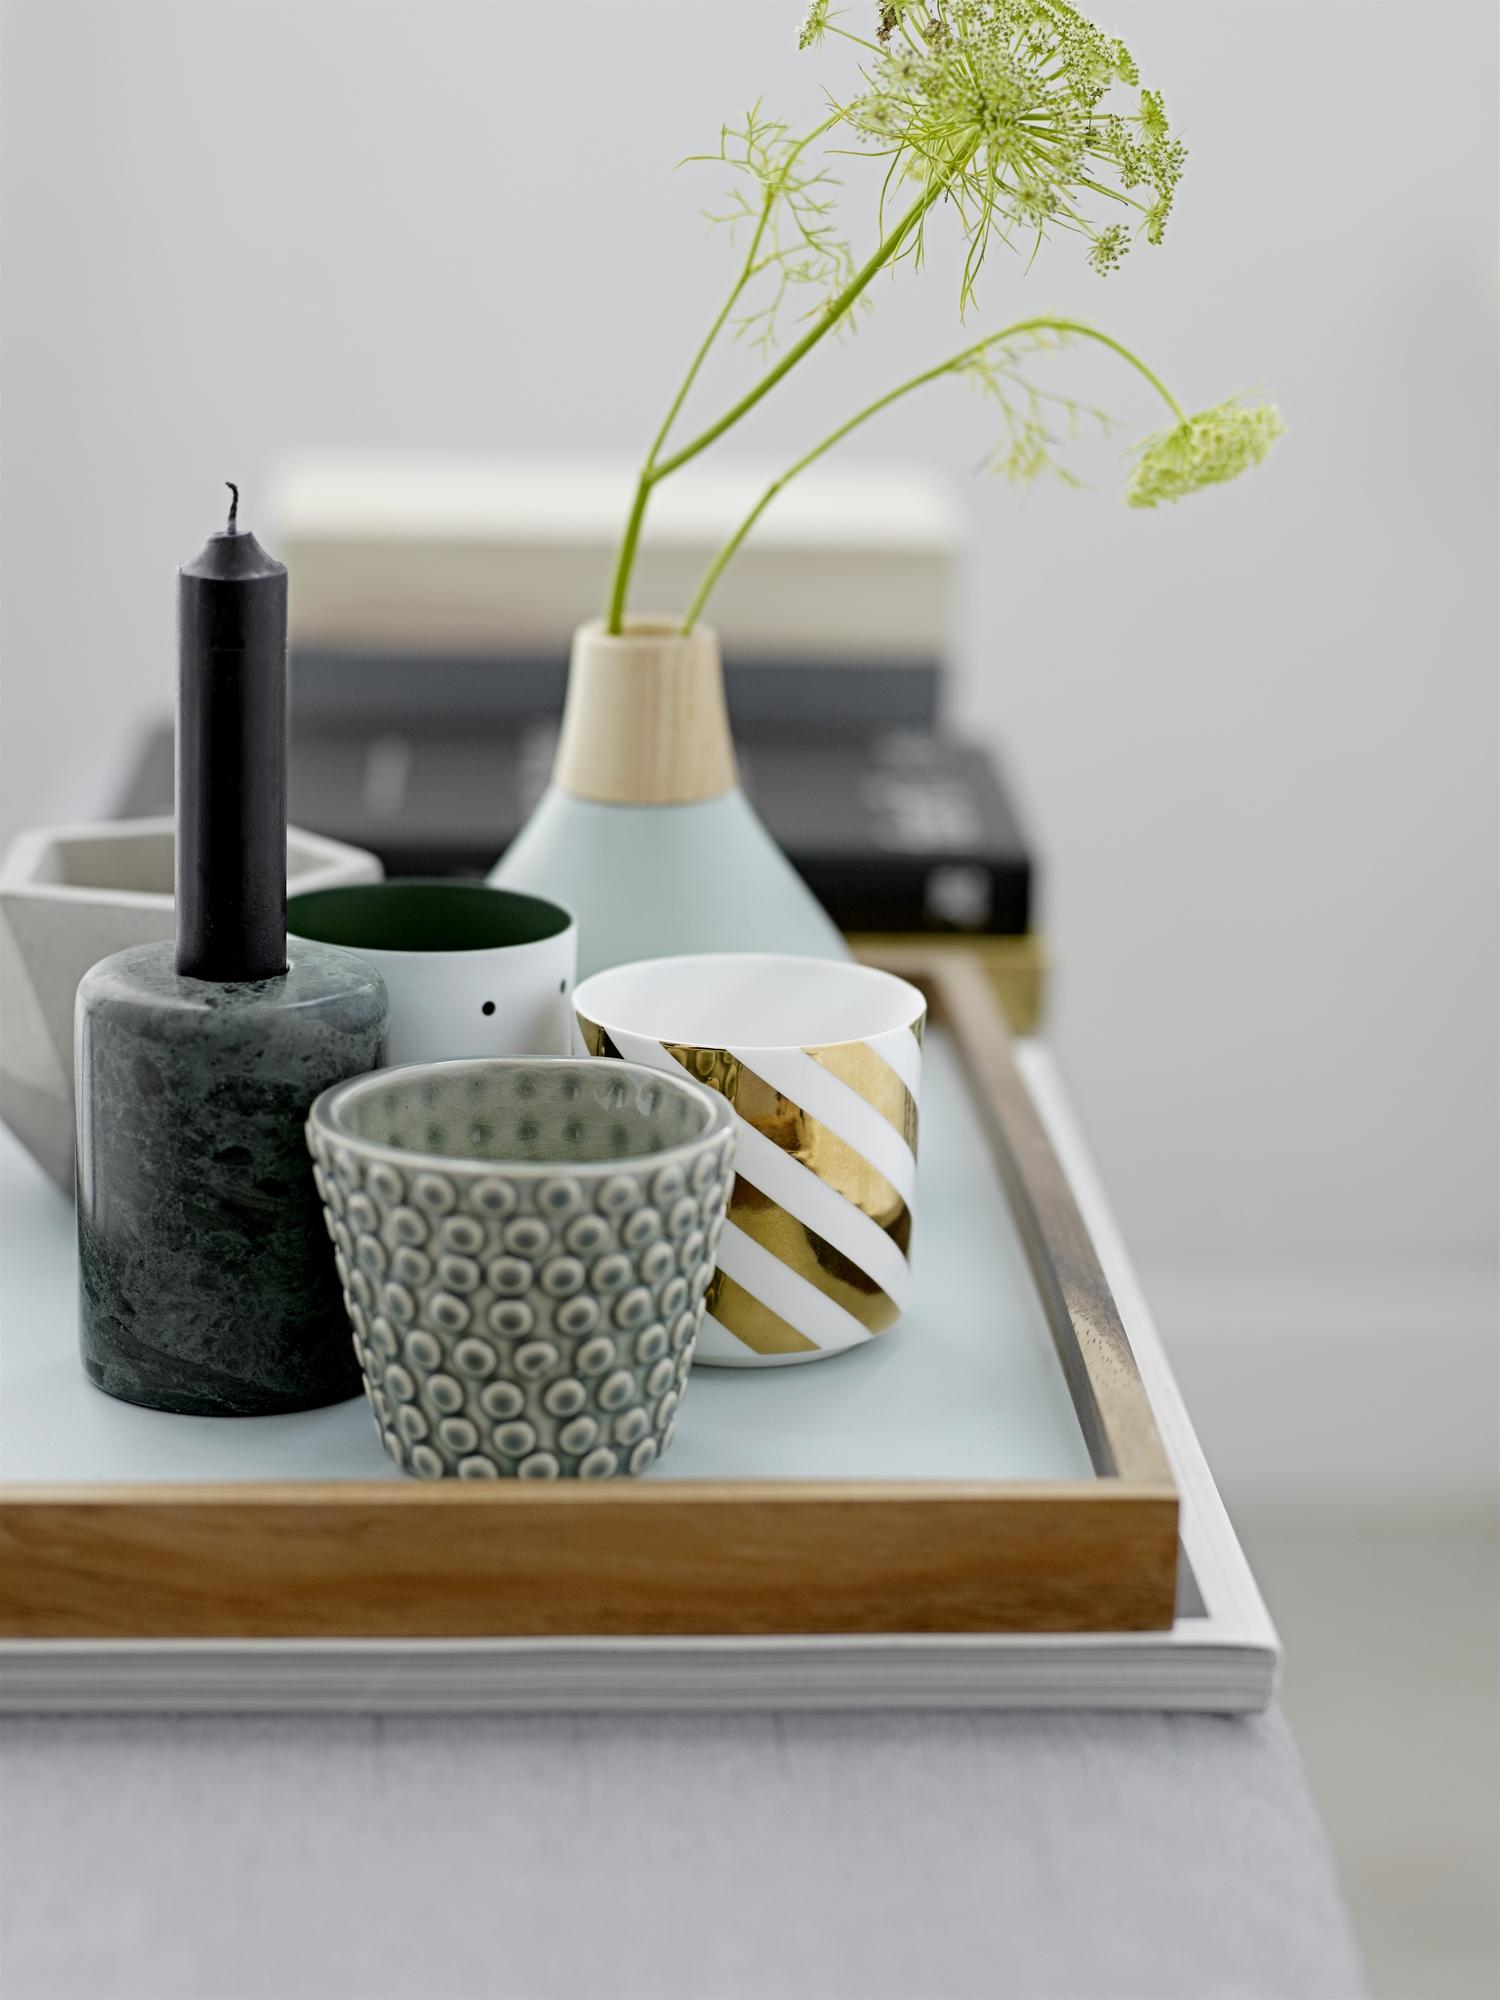 Hübsche Deko mit Teelichthaltern und Vase #tablett ©Bloomingville.com